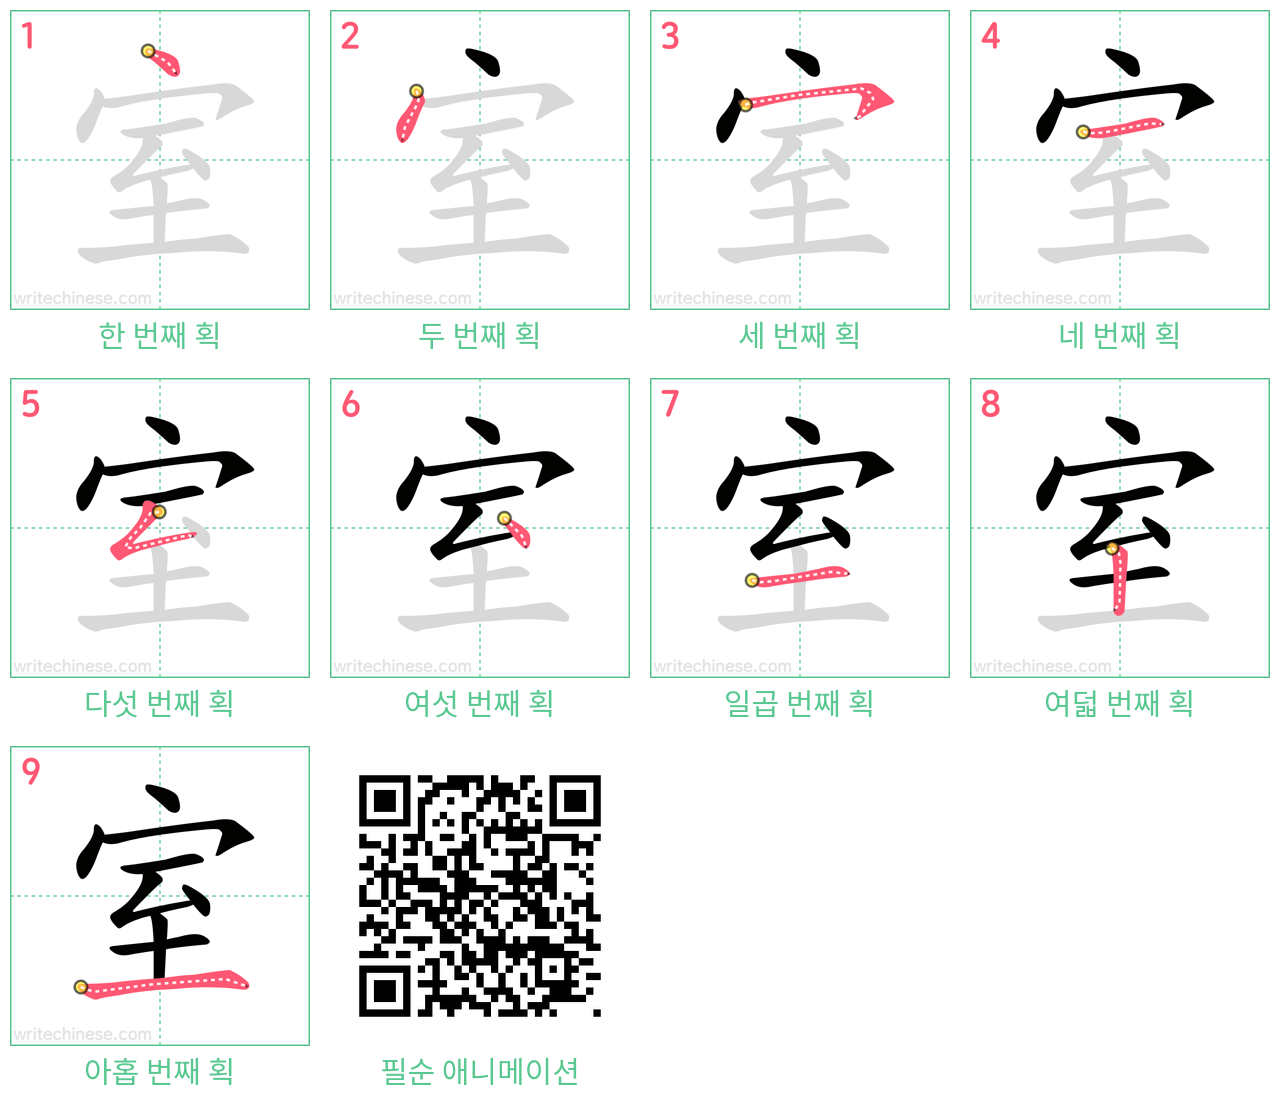 室 step-by-step stroke order diagrams